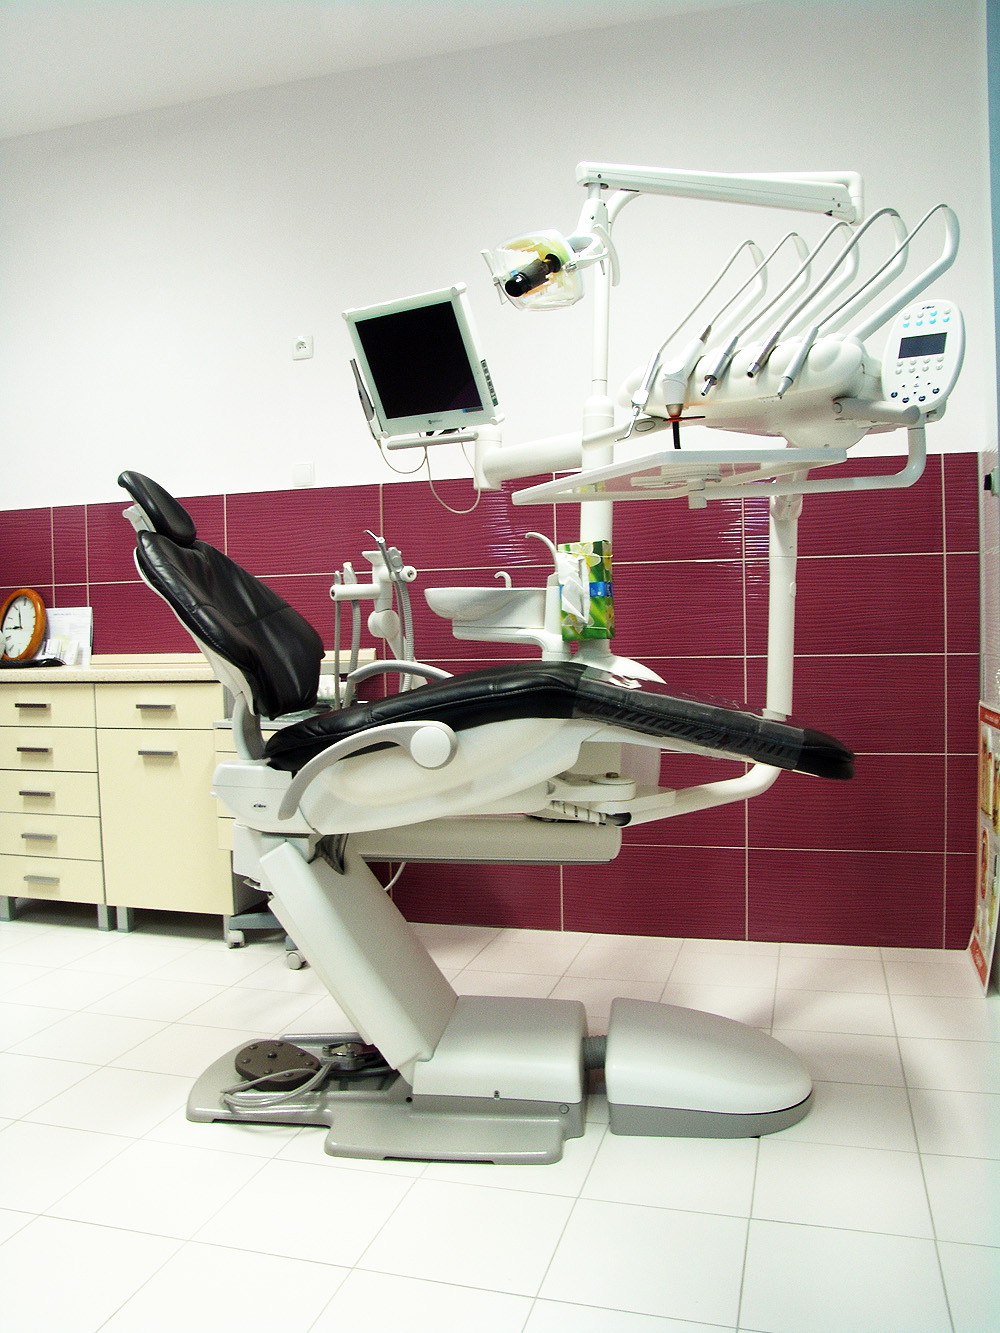 unit ortodontyczny wykorzystywany do zakładania aparatów przez ortodontę